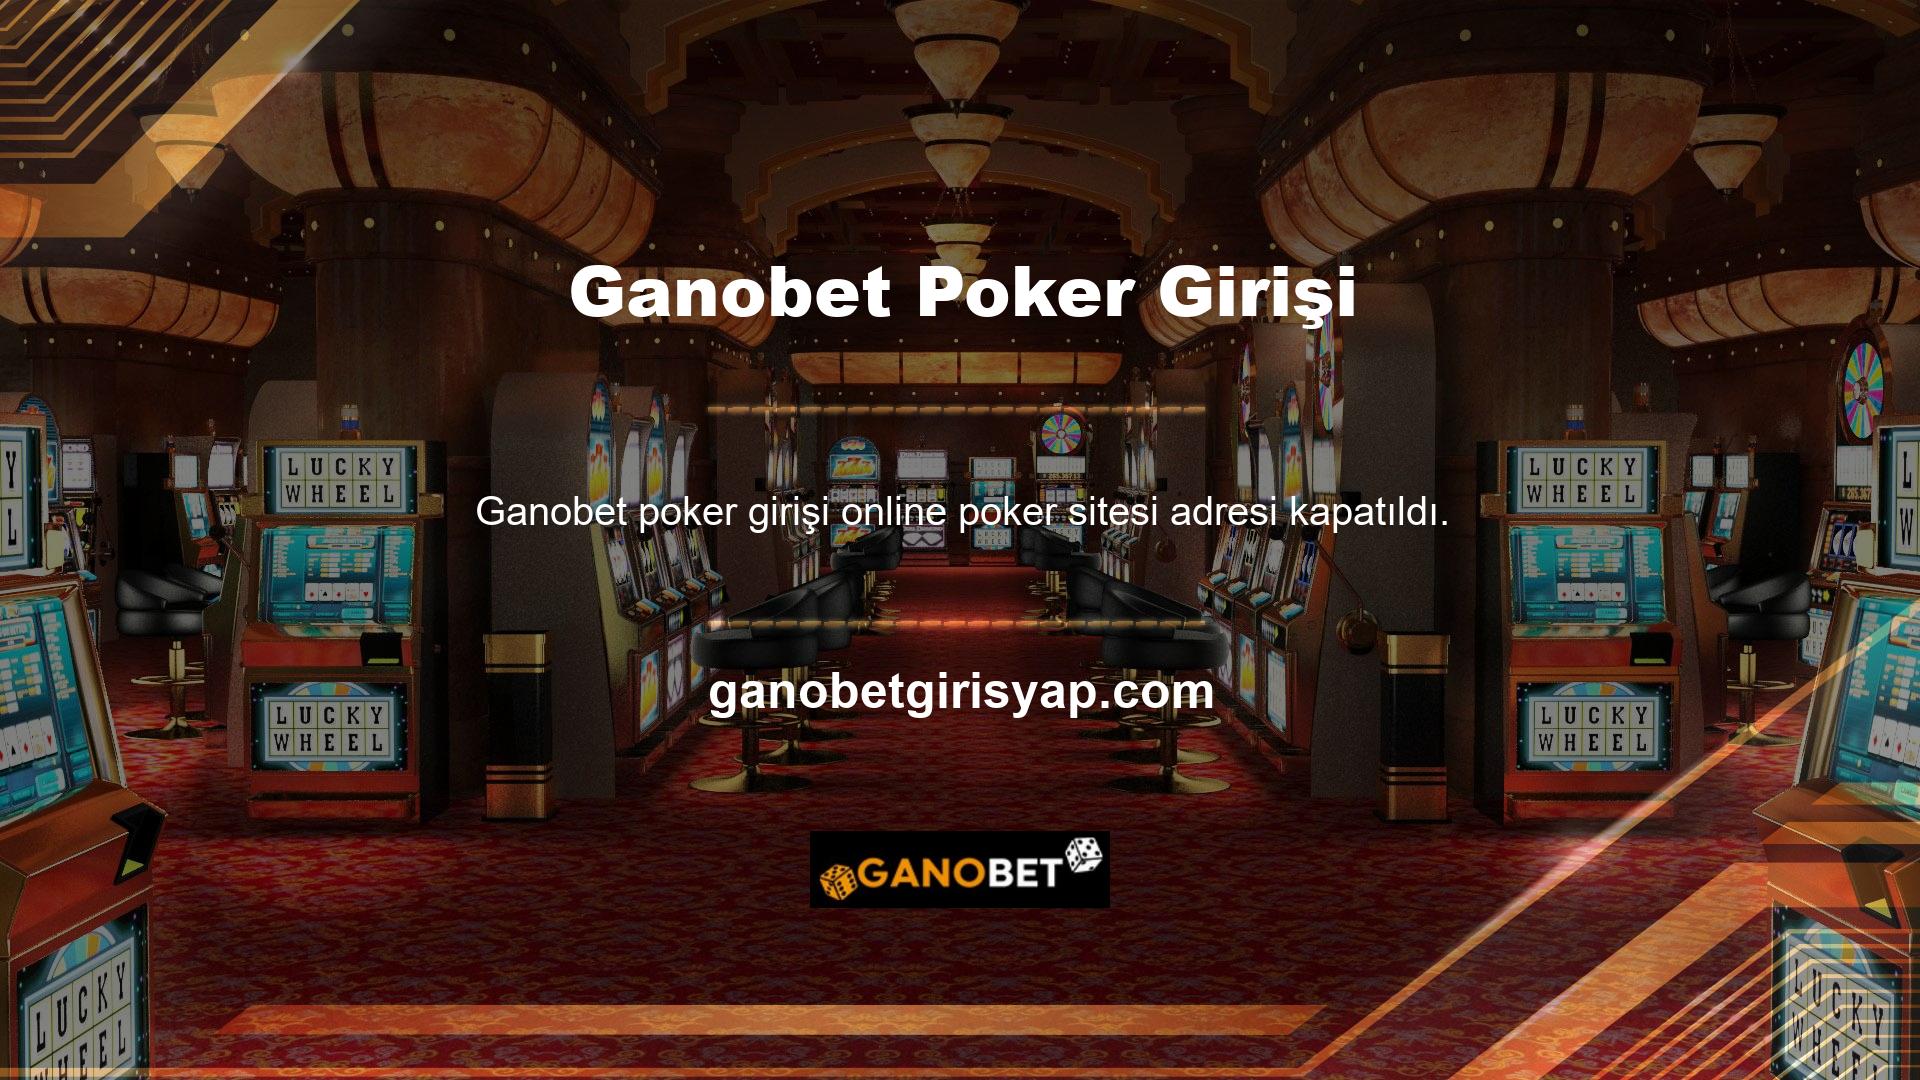 Ganobet Poker'e kayıt için yeni giriş adresi açılmıştır